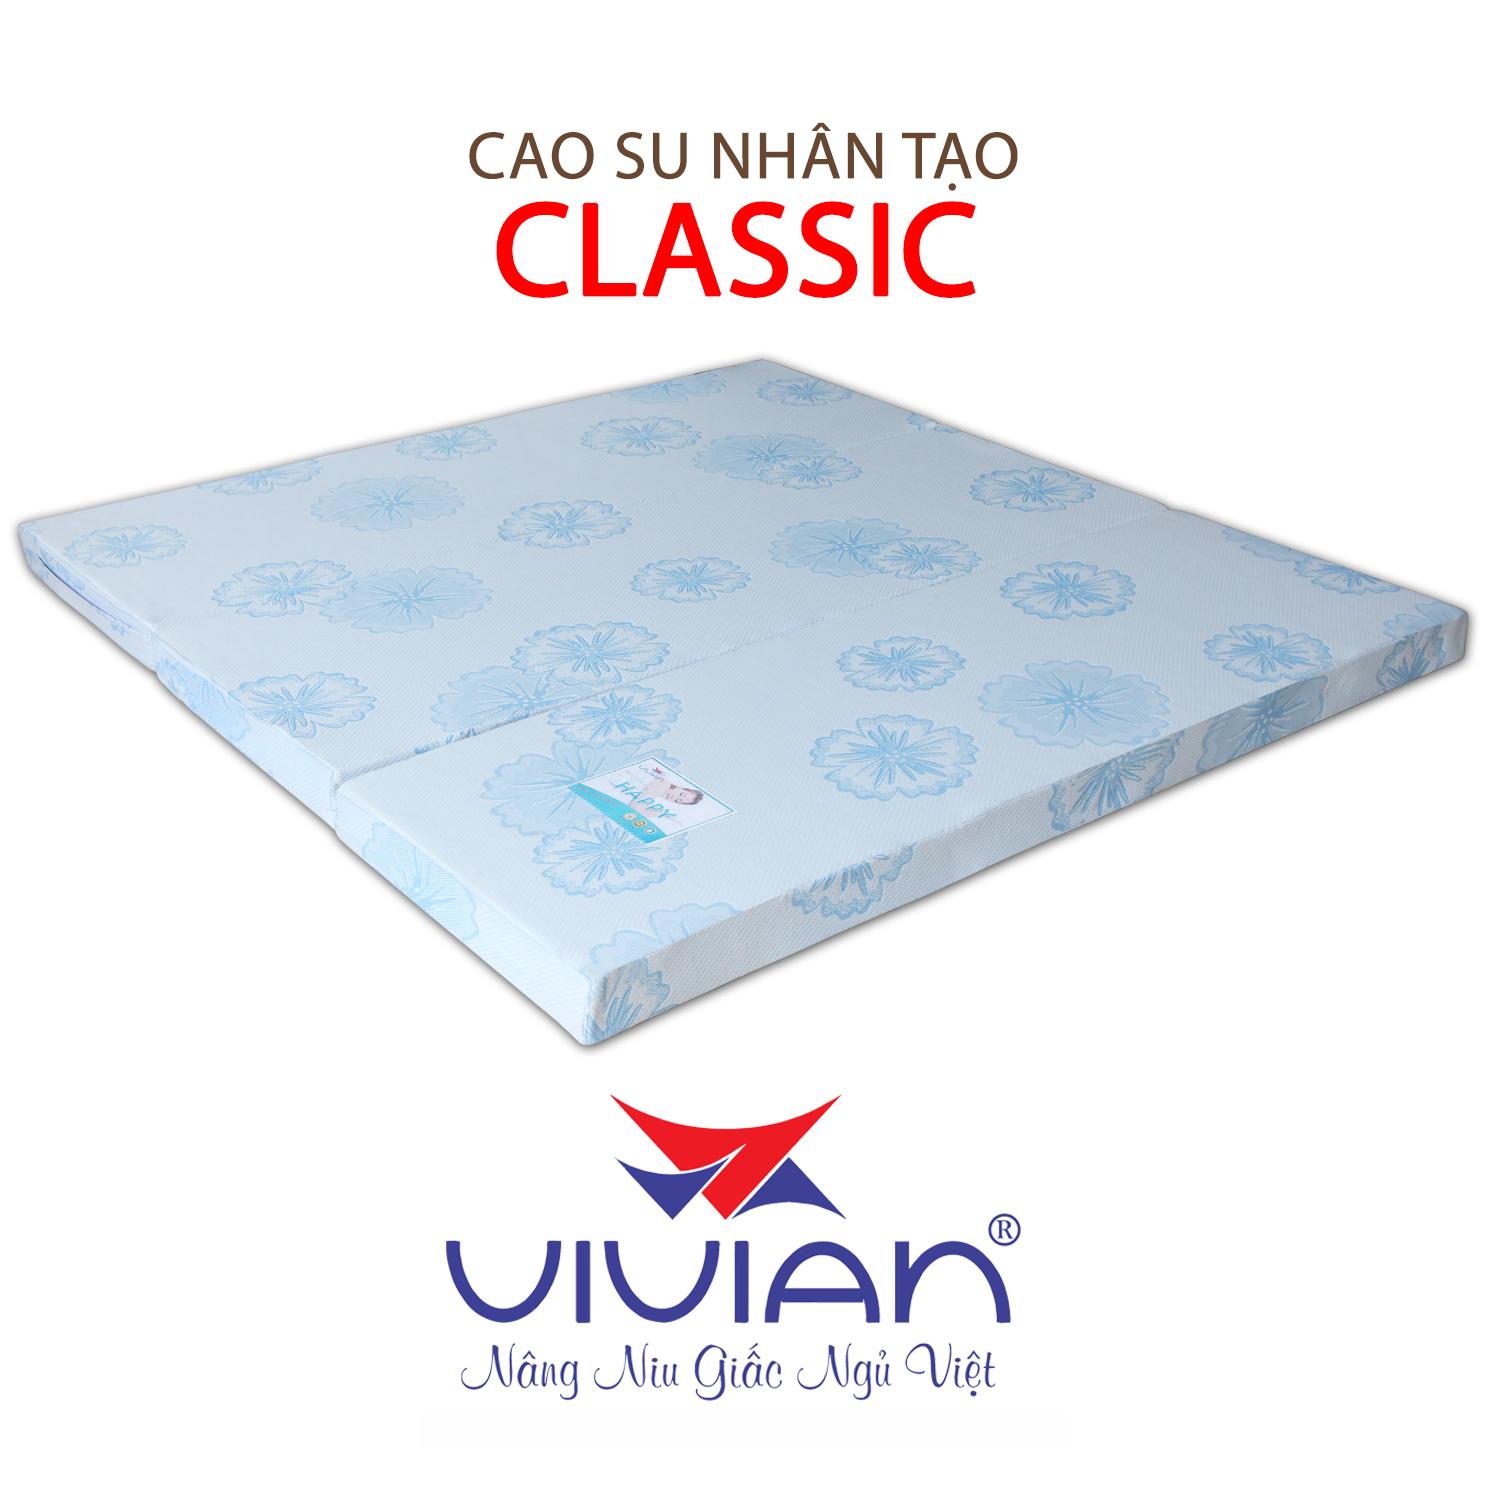 NỆM CAO SU NHÂN TẠO CLASSIC GẤP 3 VIVIAN 140X200X5